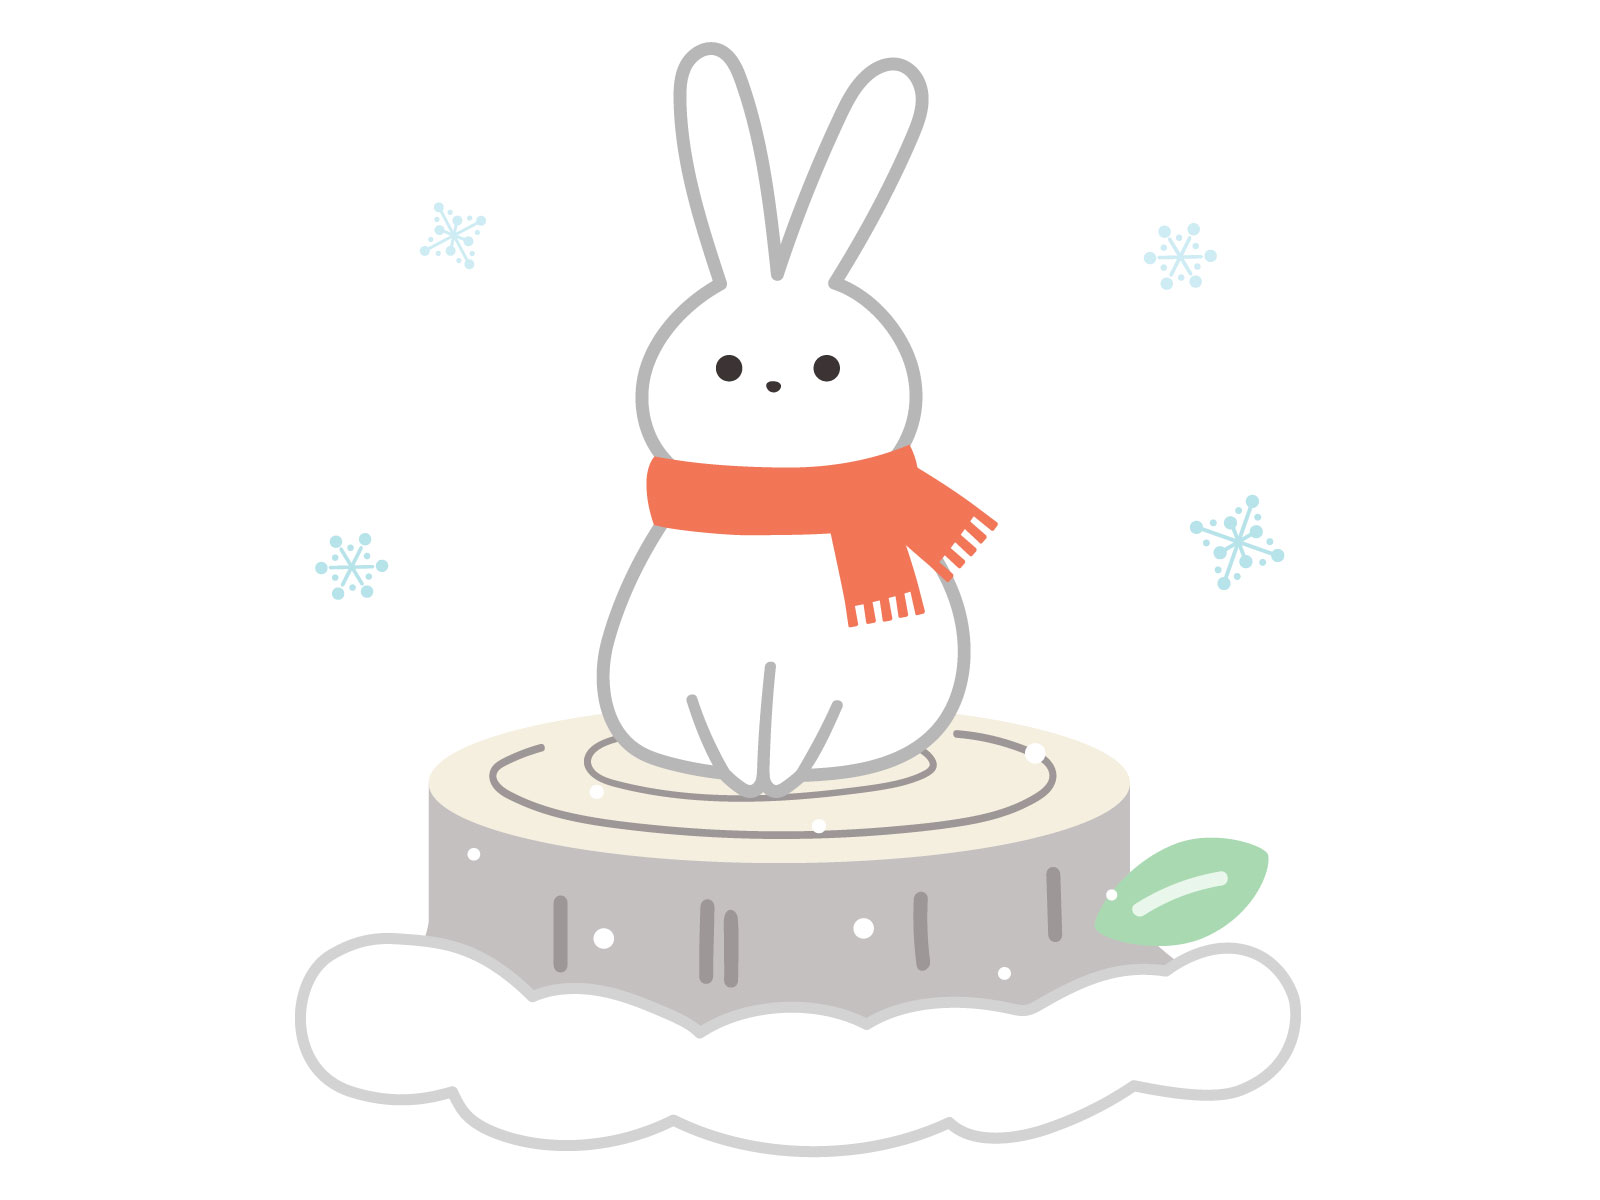 【2月20日】びわこ箱館山にて「ラビット・ストリーム」が開催！ゲレンデで遊んでいるウサギをタッチで抽選会に参加できるよ☆